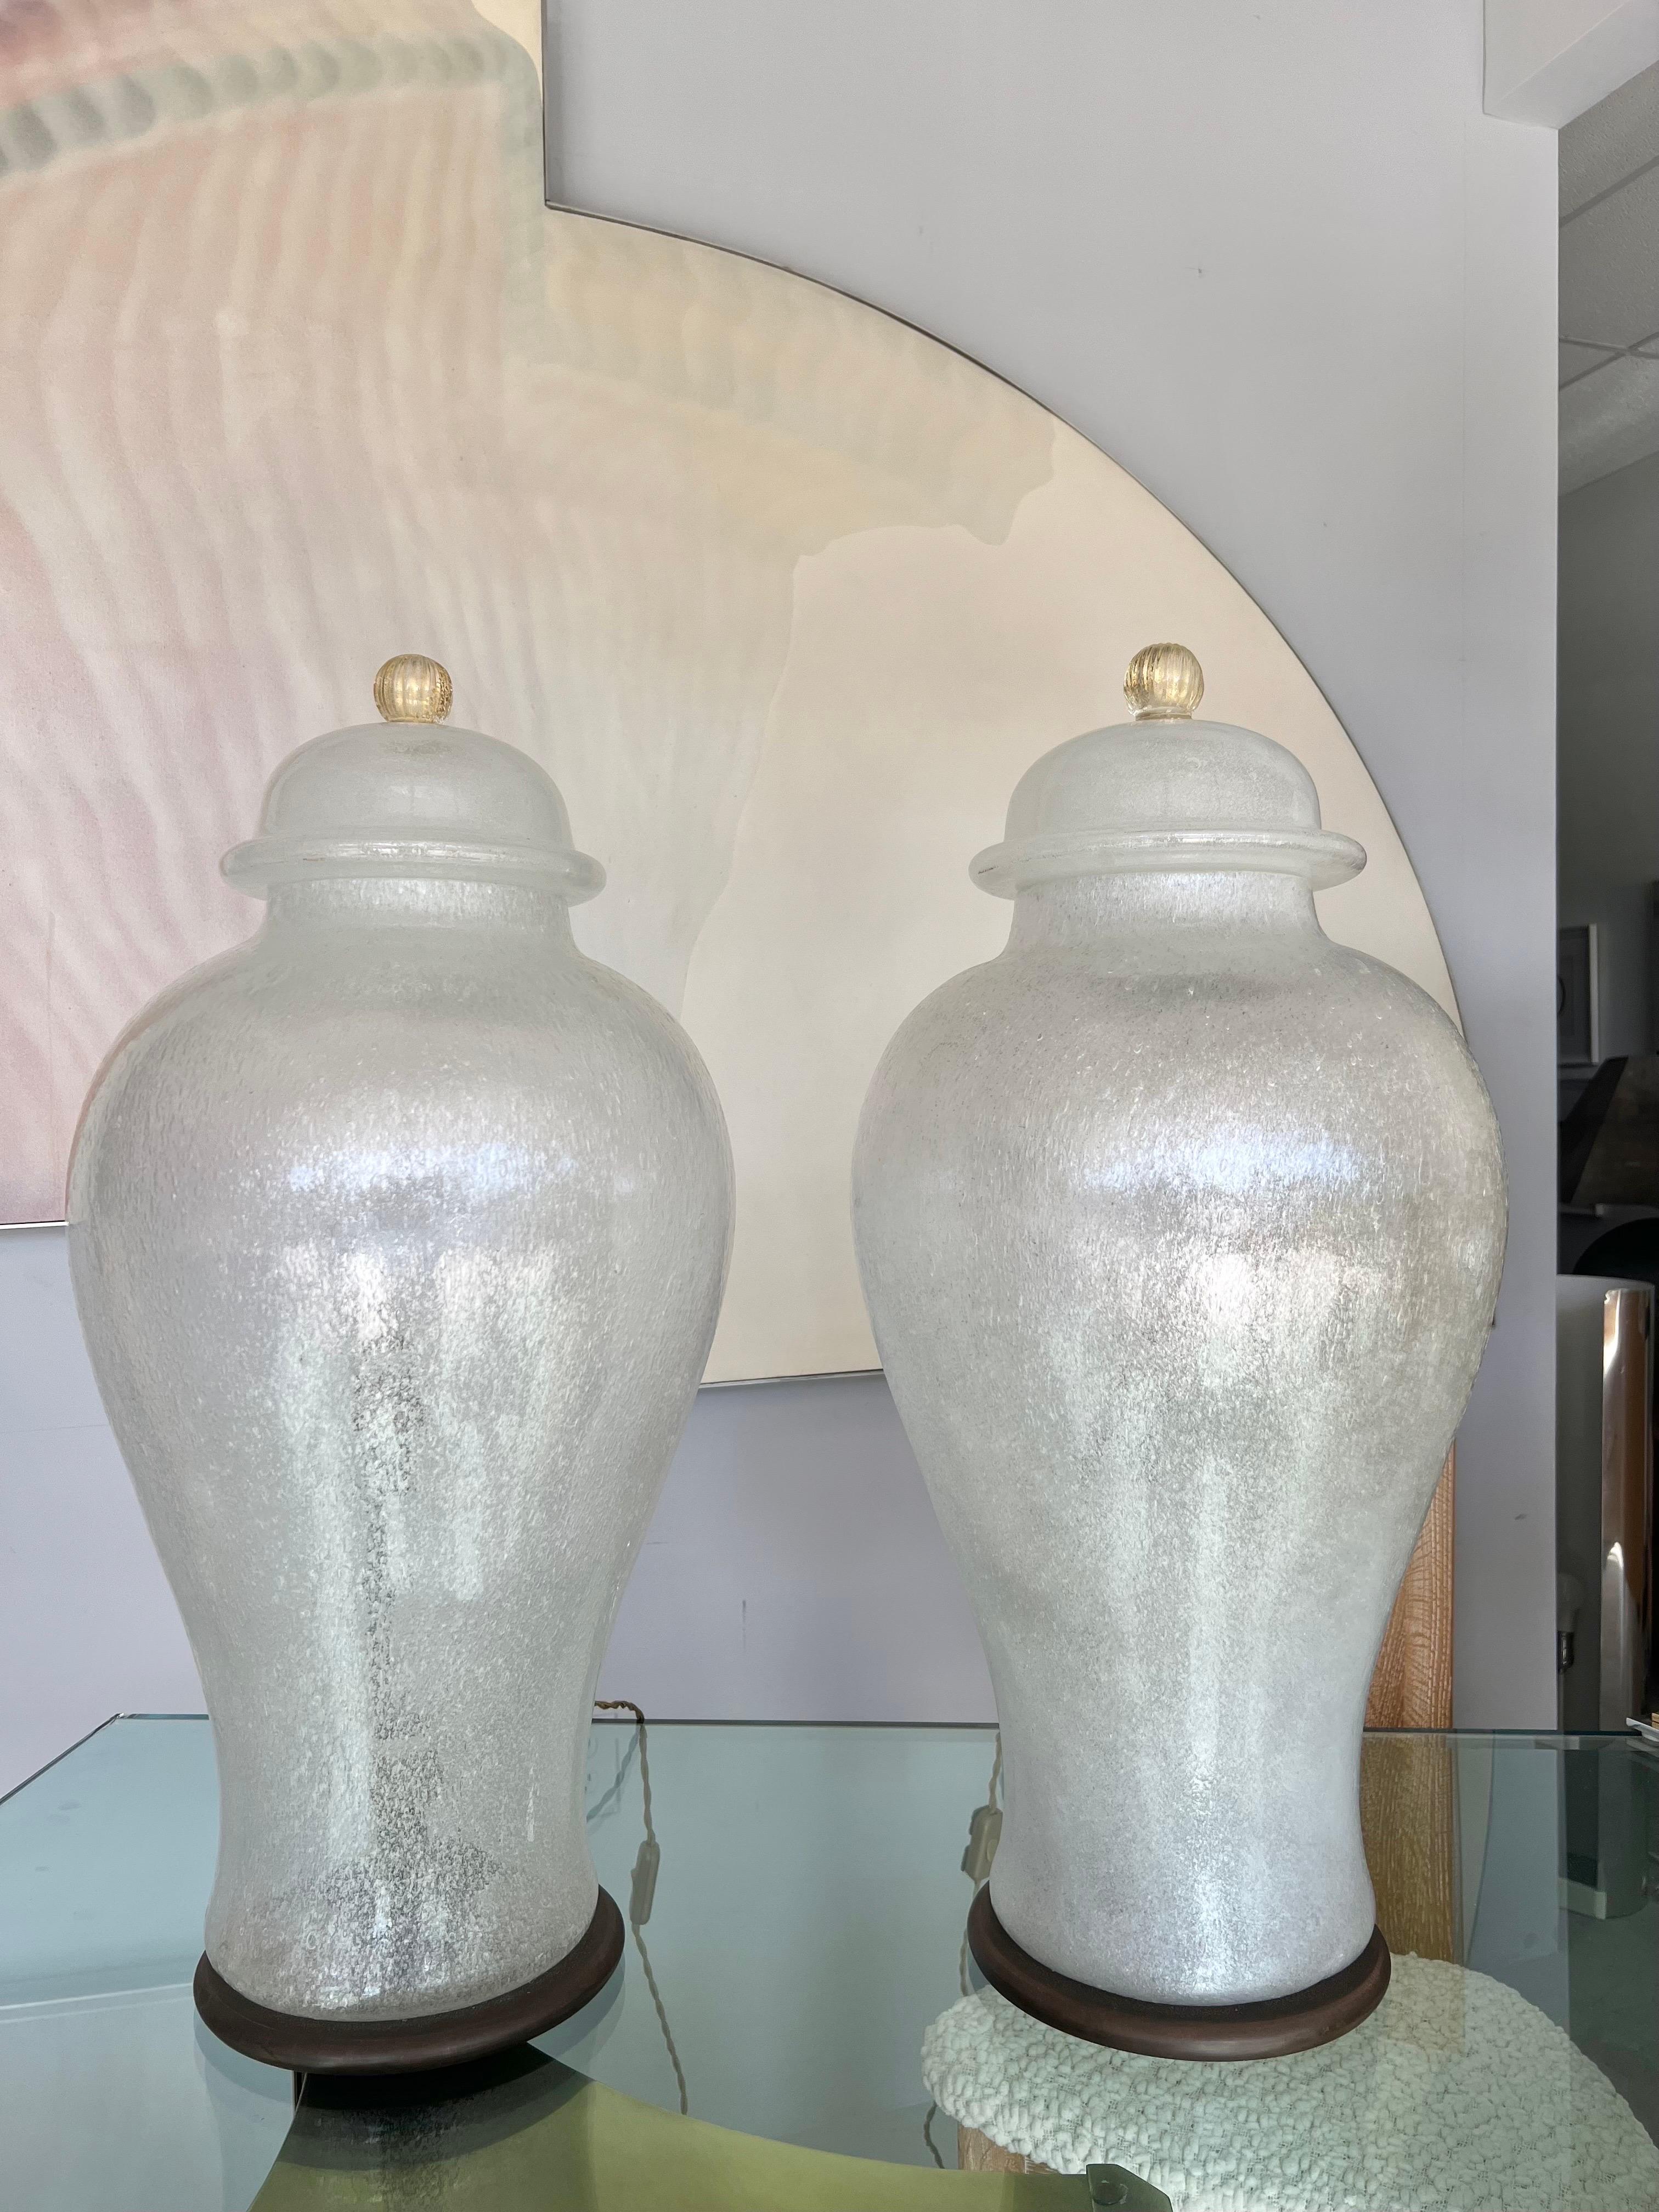 Monumentales Paar beleuchteter Urnen aus Pulegoso-Kunstglas von Seguso. Die Oberteile sind abnehmbar und geben den Blick auf die Bronzefassungen für je 2 Glühbirnen frei. Runde Bronzesockel, Seidendrahtkordeln. Signiert auf der Metallinnenseite. 